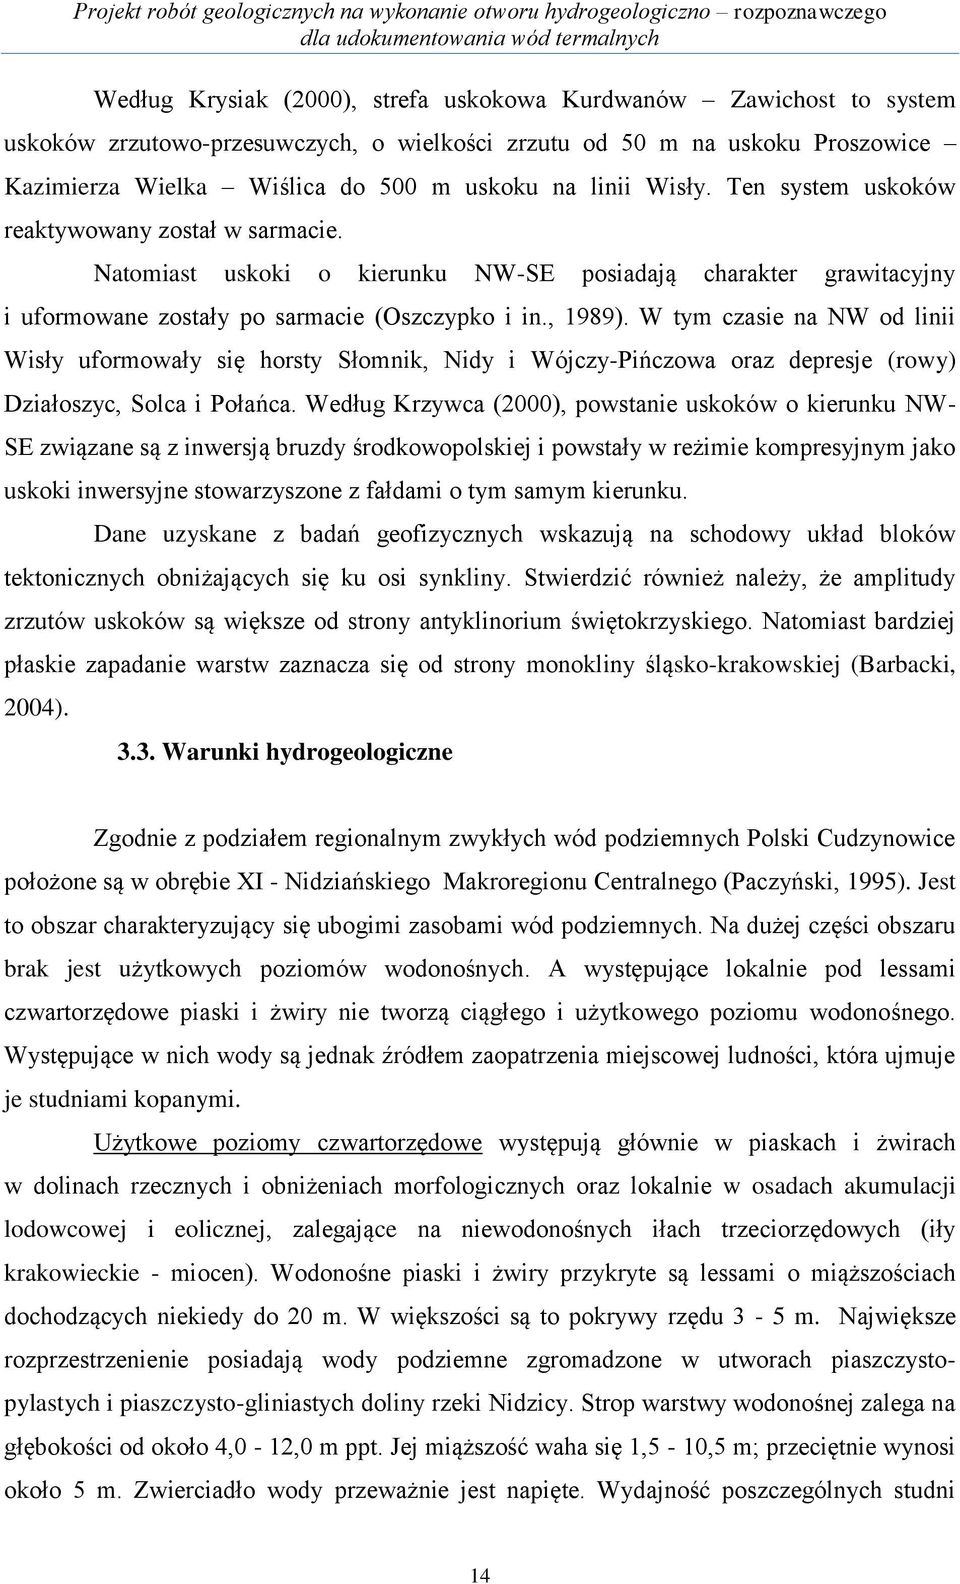 W tym czasie na NW od linii Wisły uformowały się horsty Słomnik, Nidy i Wójczy-Pińczowa oraz depresje (rowy) Działoszyc, Solca i Połańca.